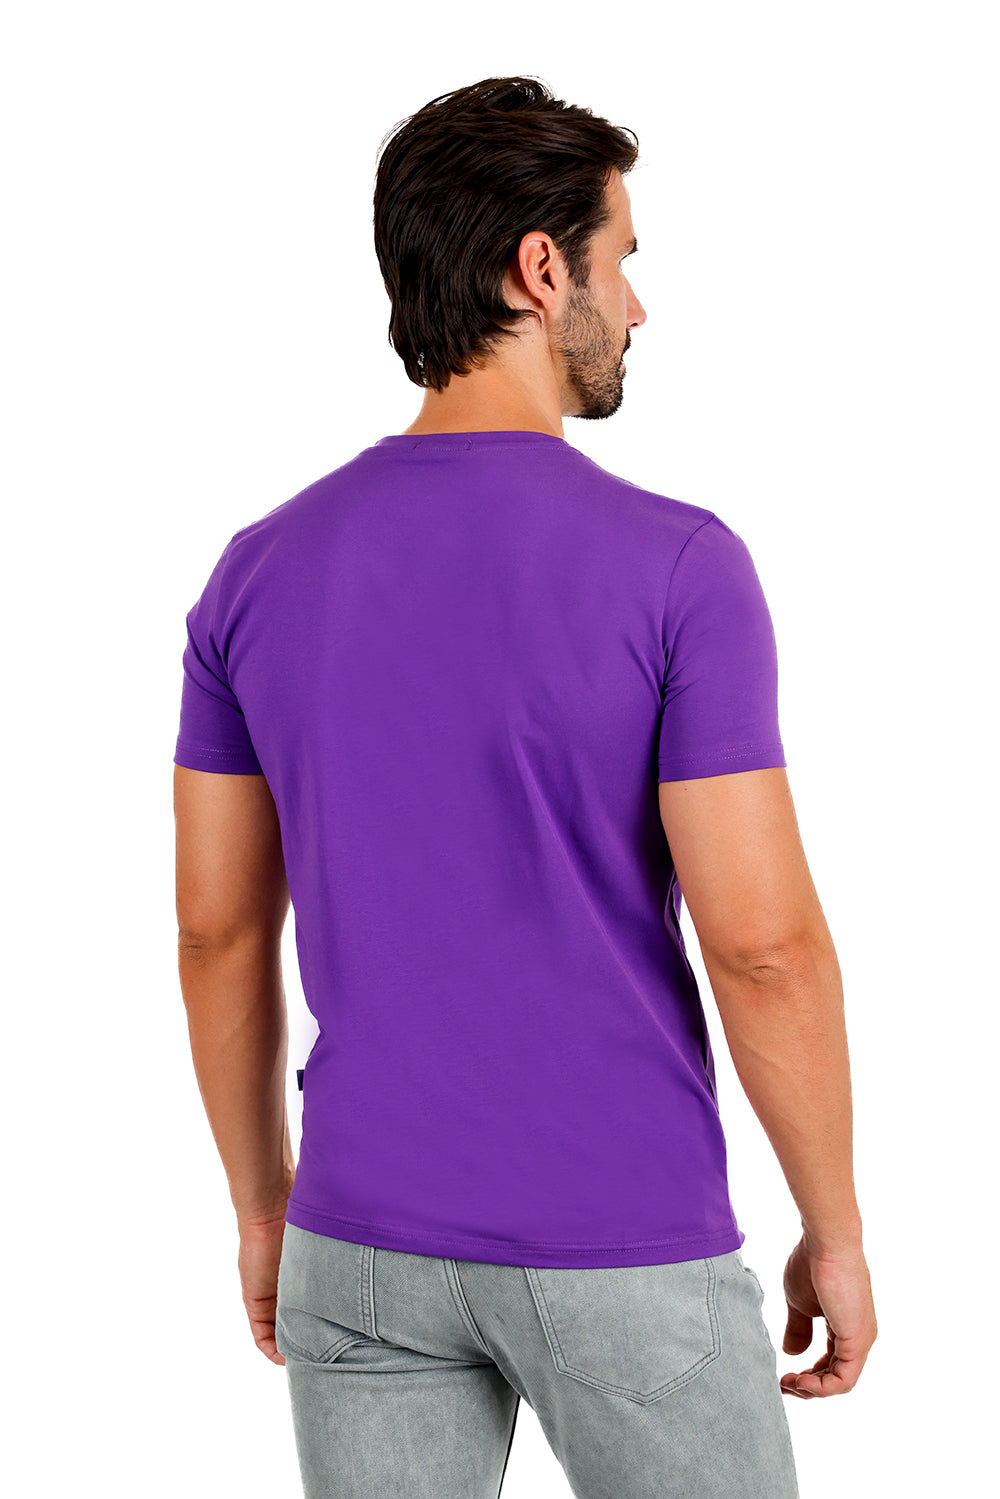 BARABAS Men's Solid Color V-neck T-shirts TV216 Purple